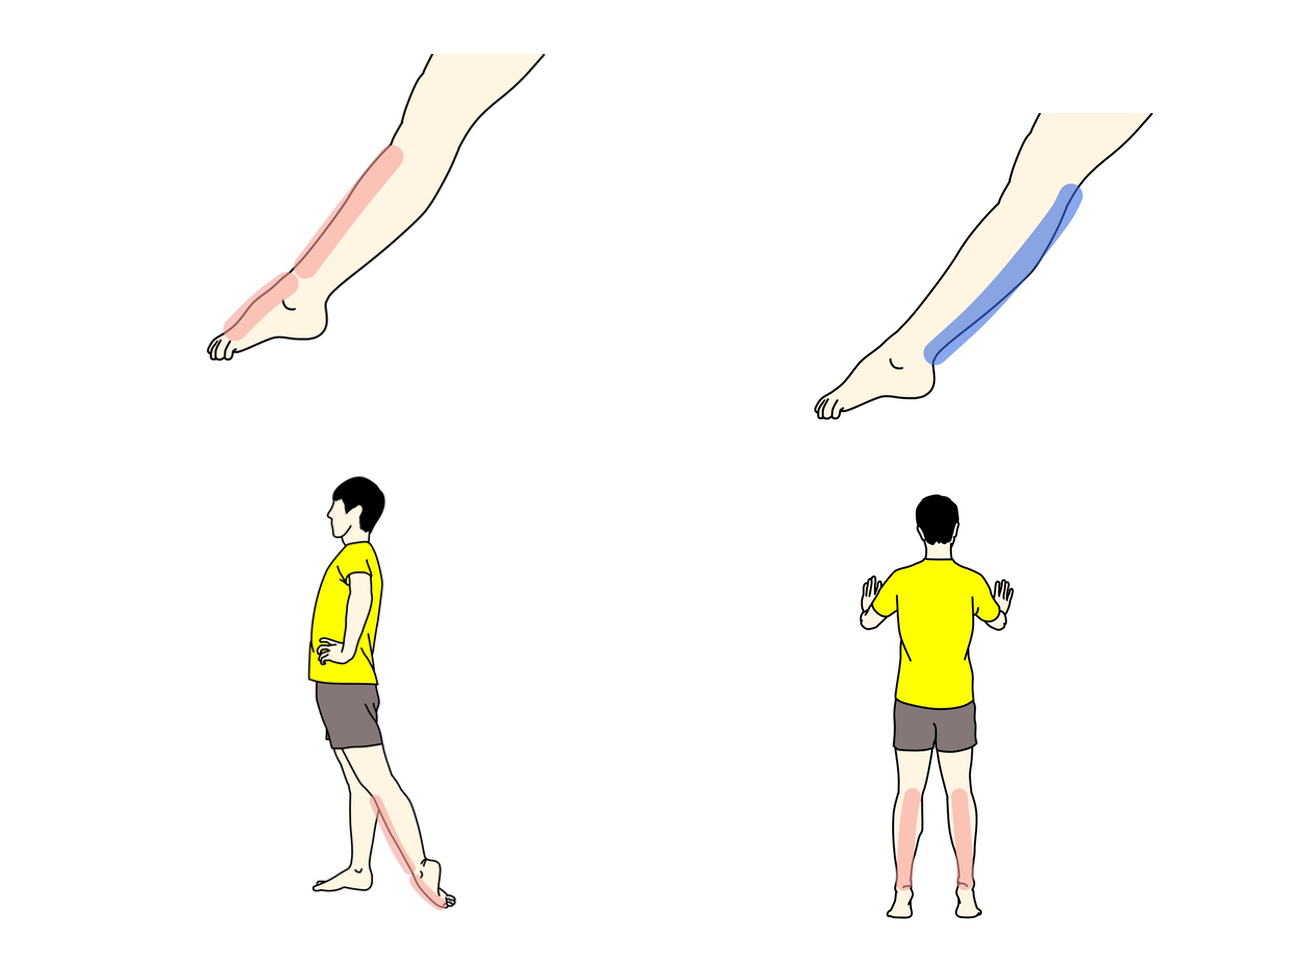 足首を伸ばす動作（底屈）を柔らかくするためのストレッチとトレーニング